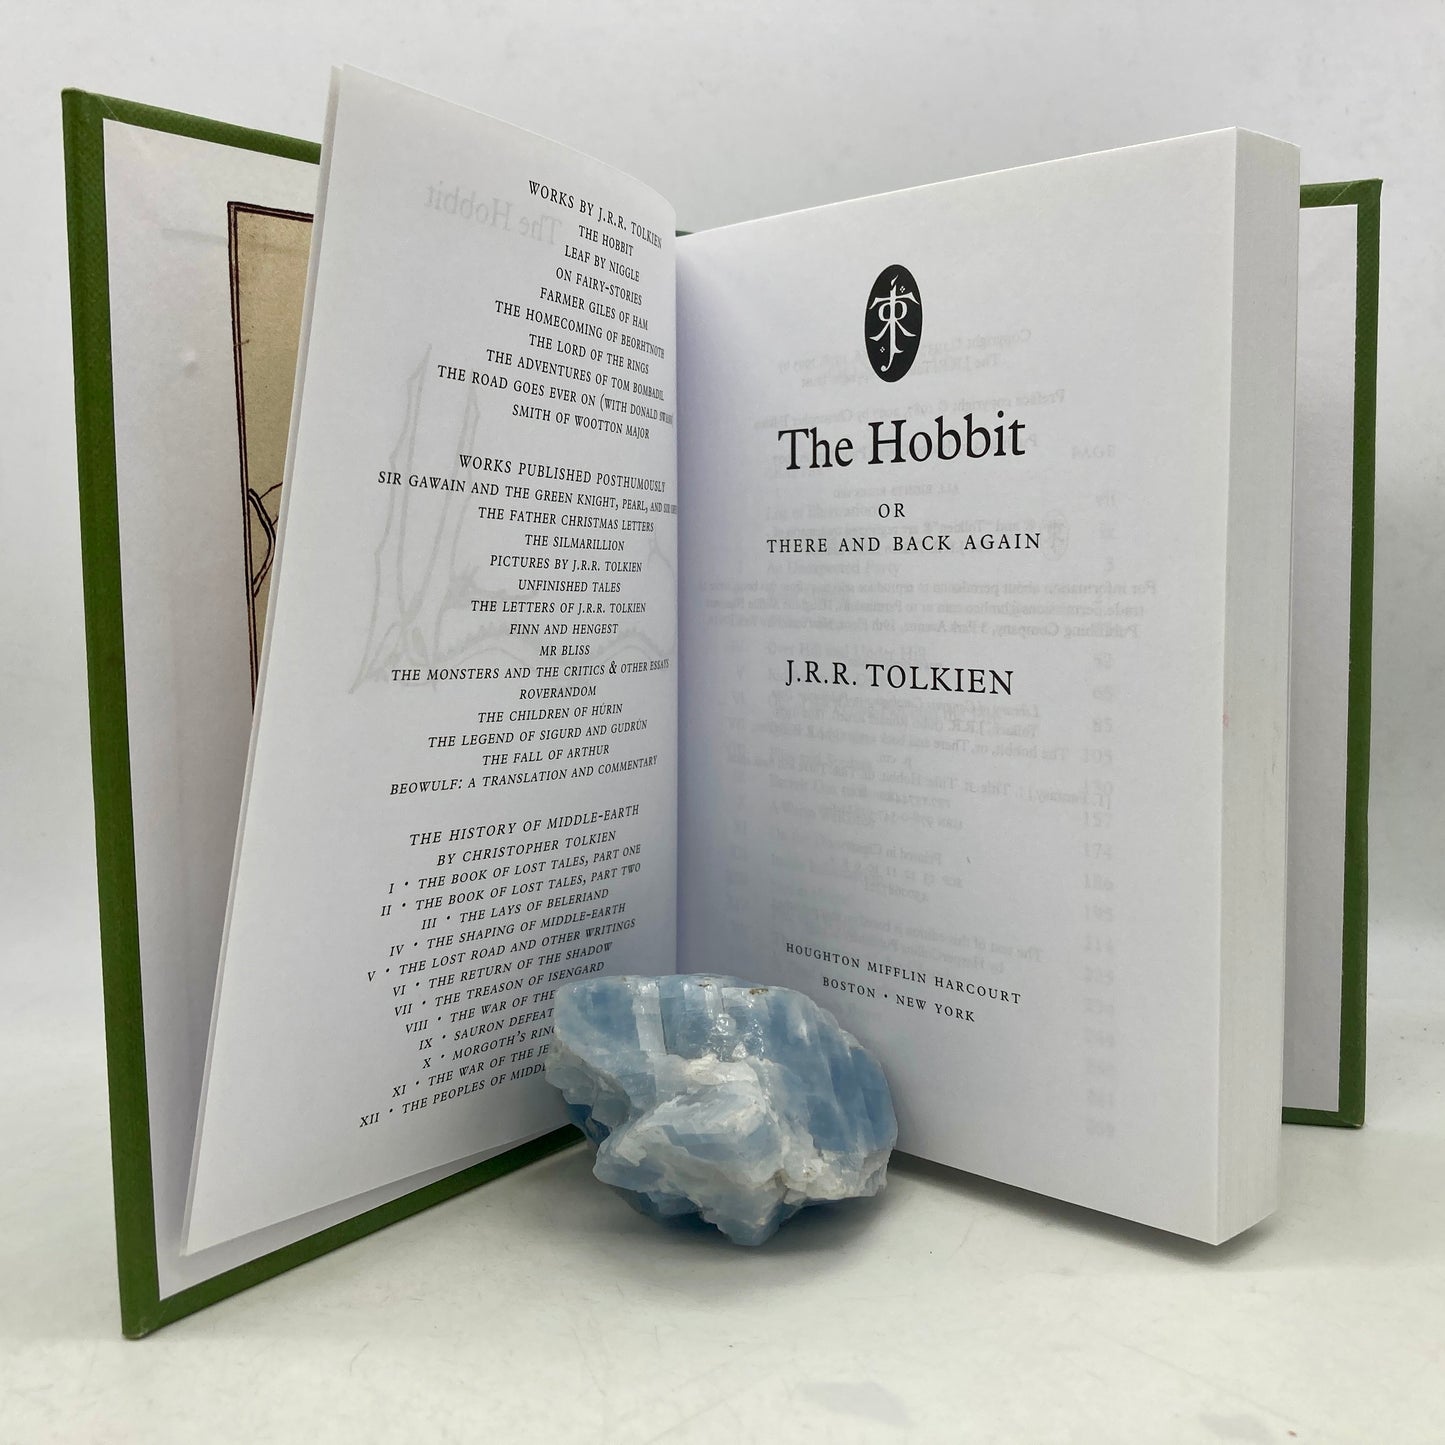 TOLKIEN, J.R.R. "The Hobbit" [Houghton Mifflin Harcourt, 2012]